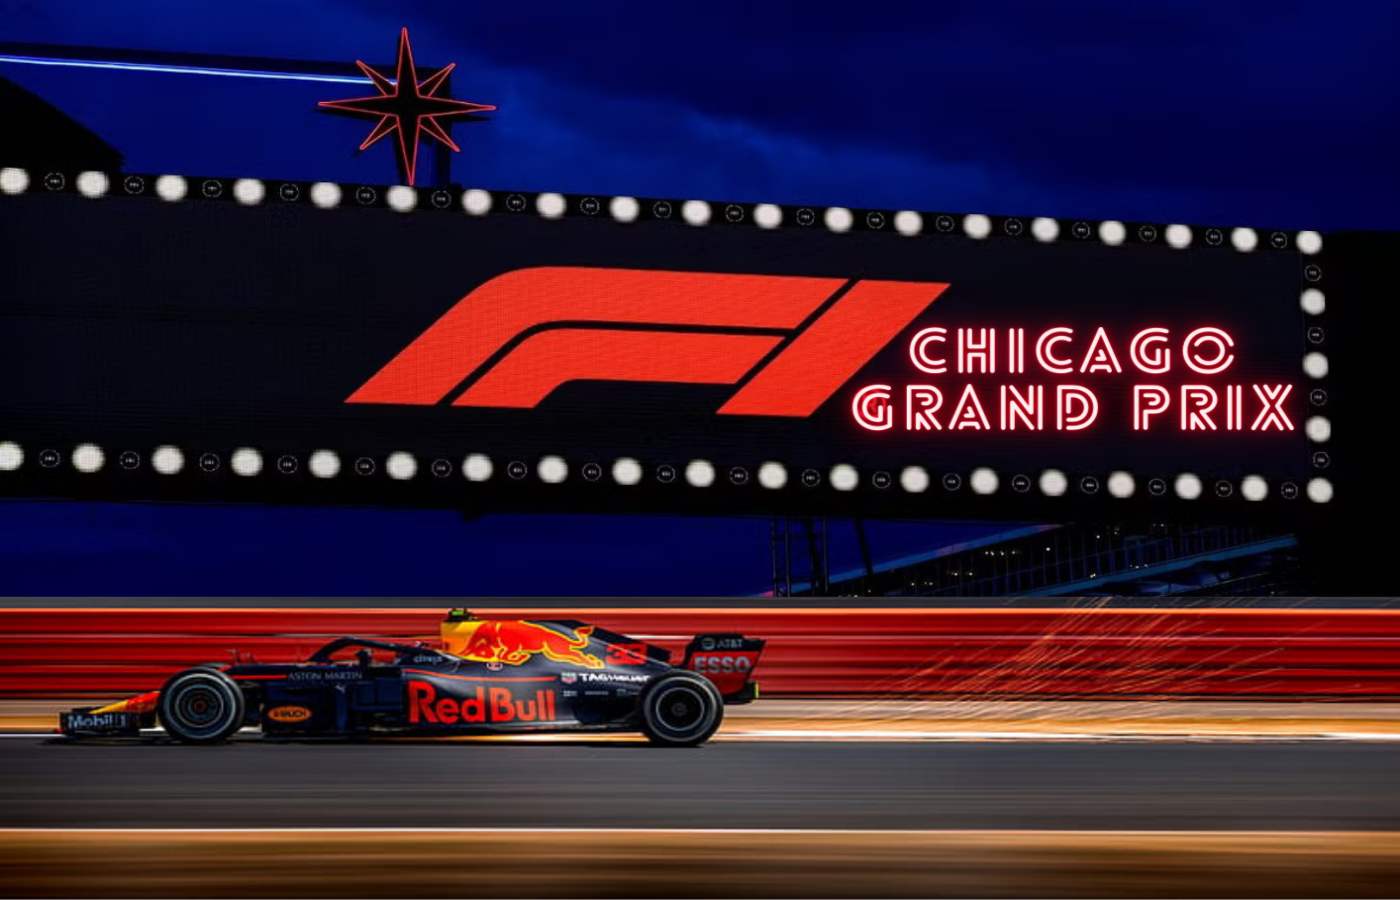 Chicago Grand Prix F1 feature